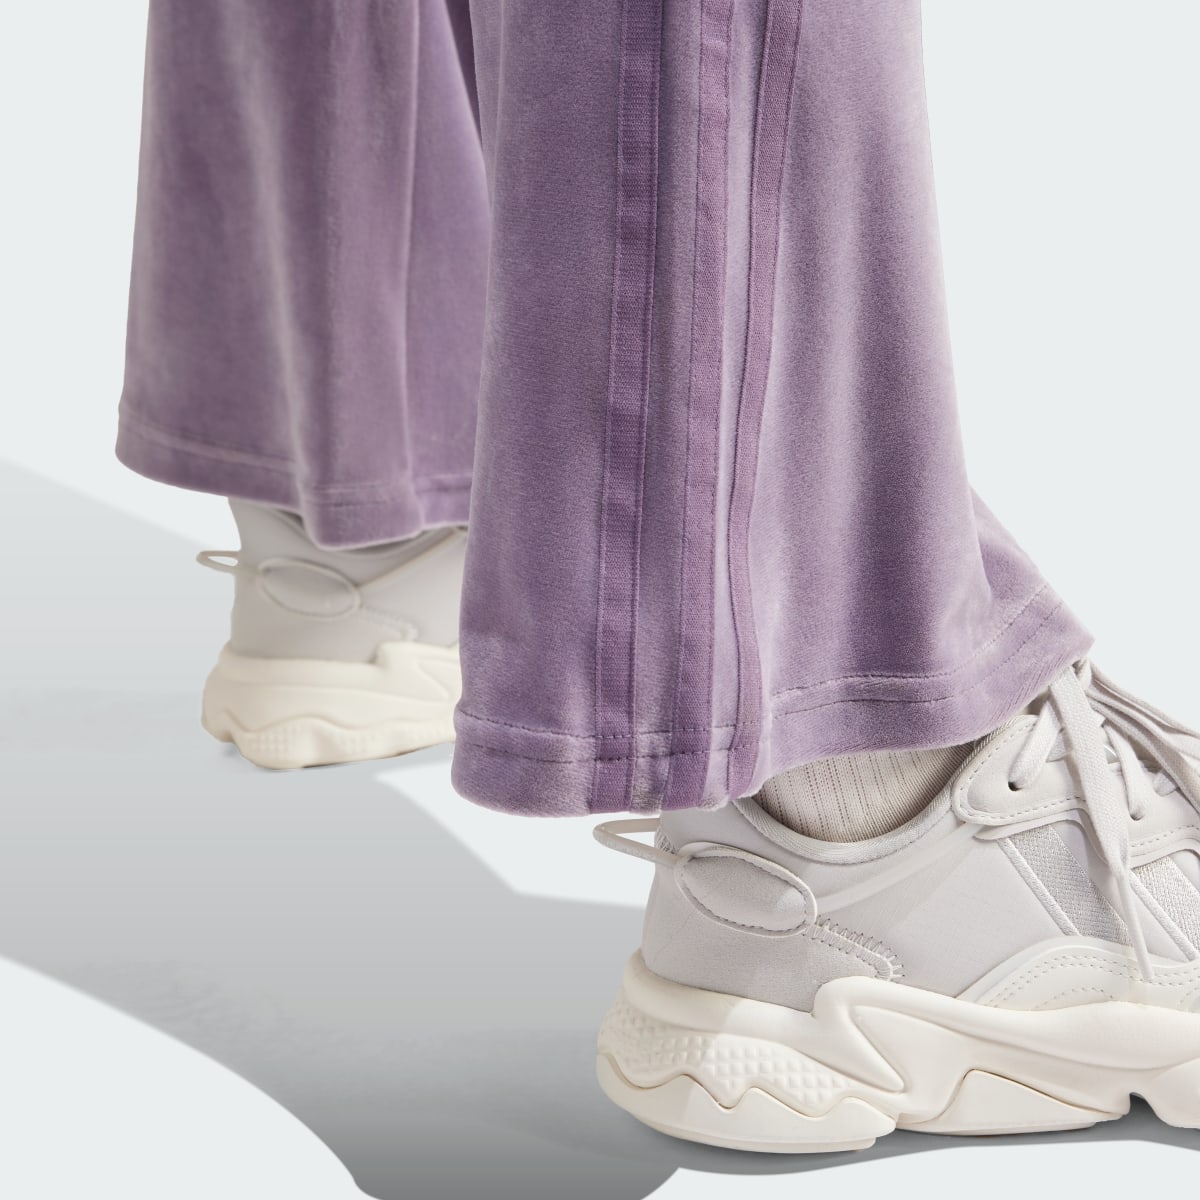 Adidas Pants con Pierna Acampanada de Terciopelo Arrugado. 4